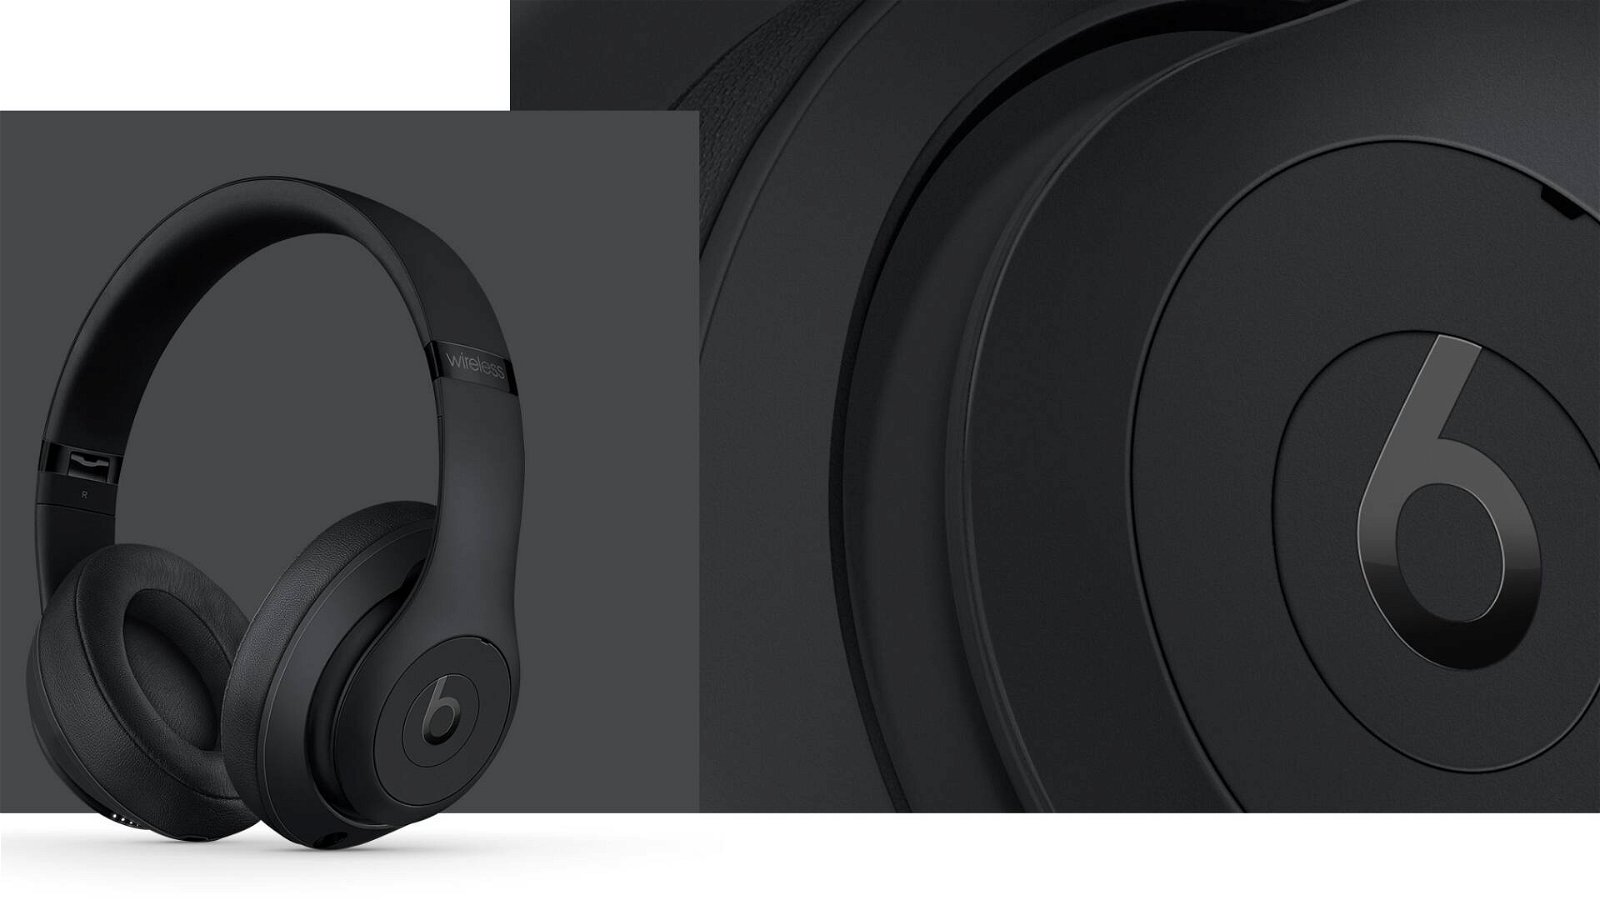 Immagine di Offerte del giorno Amazon: cuffie Beats Studio3 Wireless in sconto di oltre 160€!